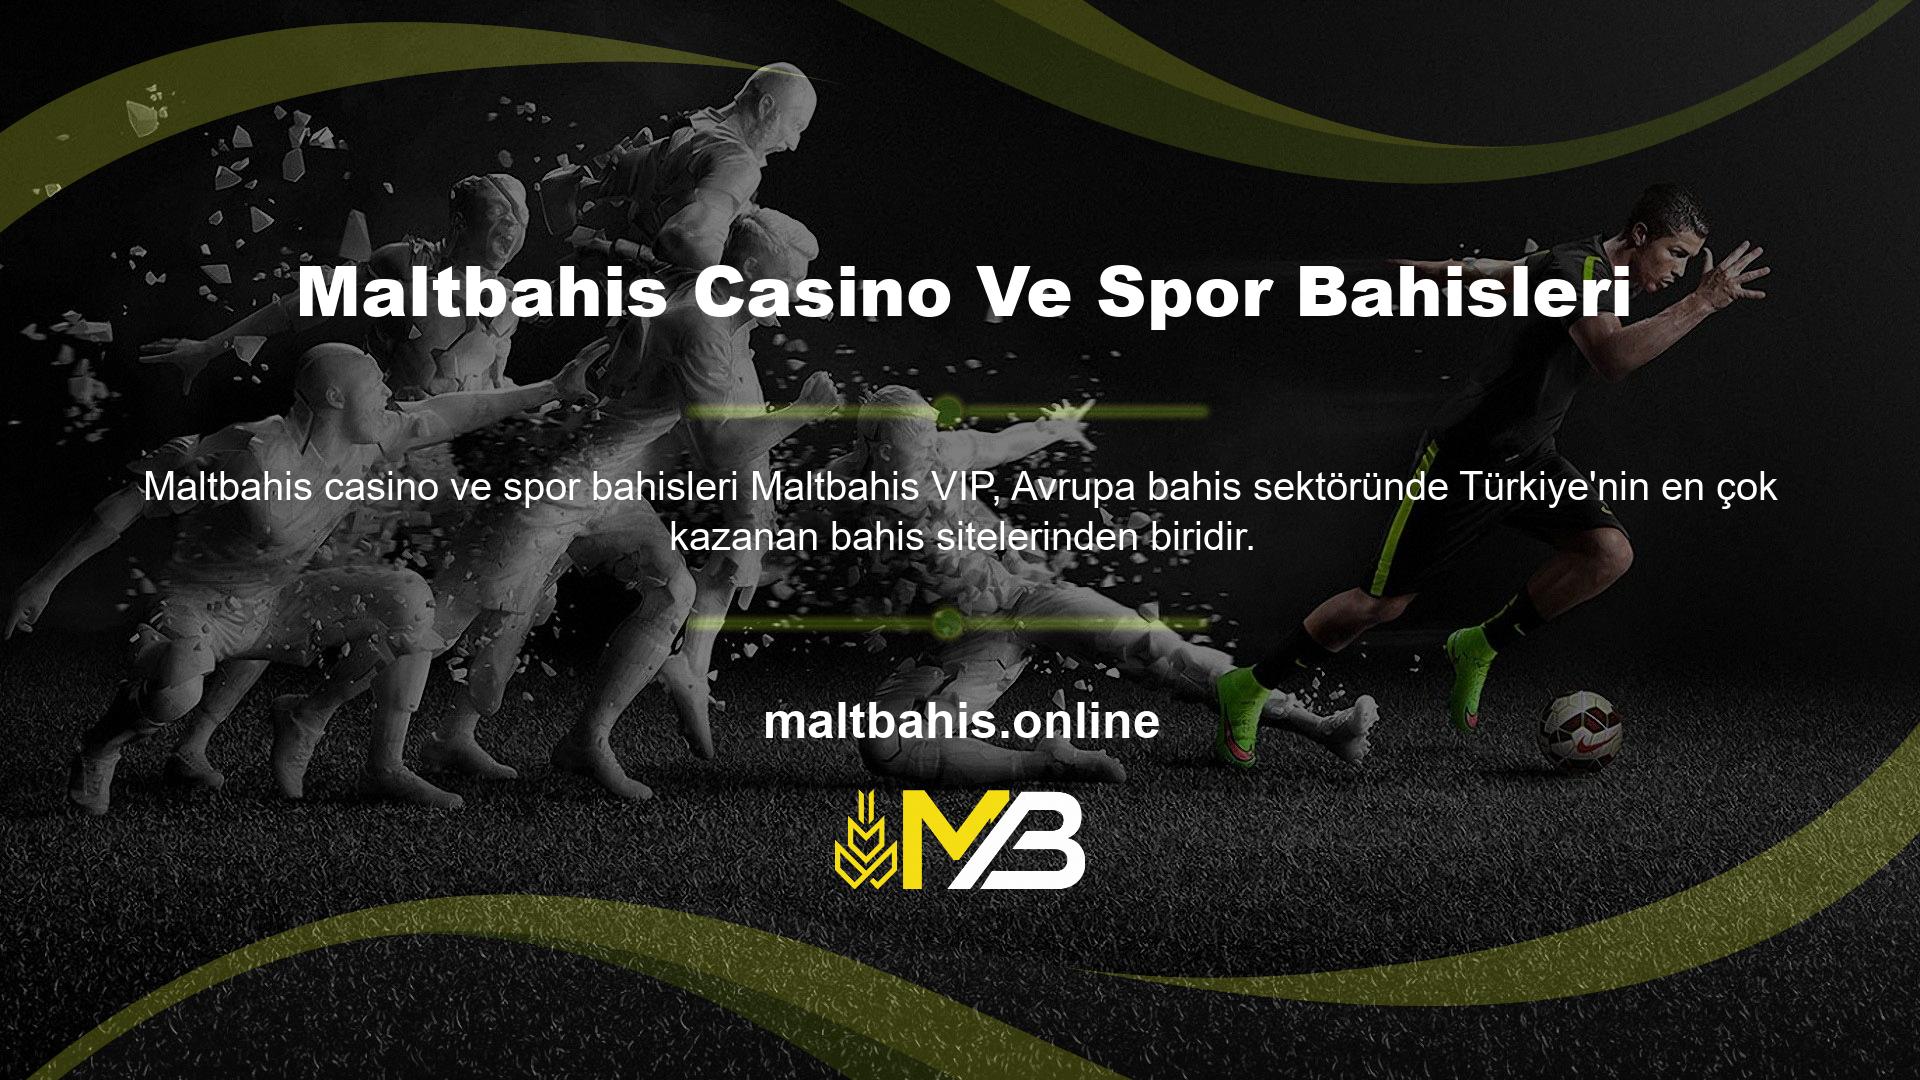 Maltbahis bahis sitesi olarak spor bahisleri alanında farklı spor departmanlarının üyelerini bir araya getiriyoruz